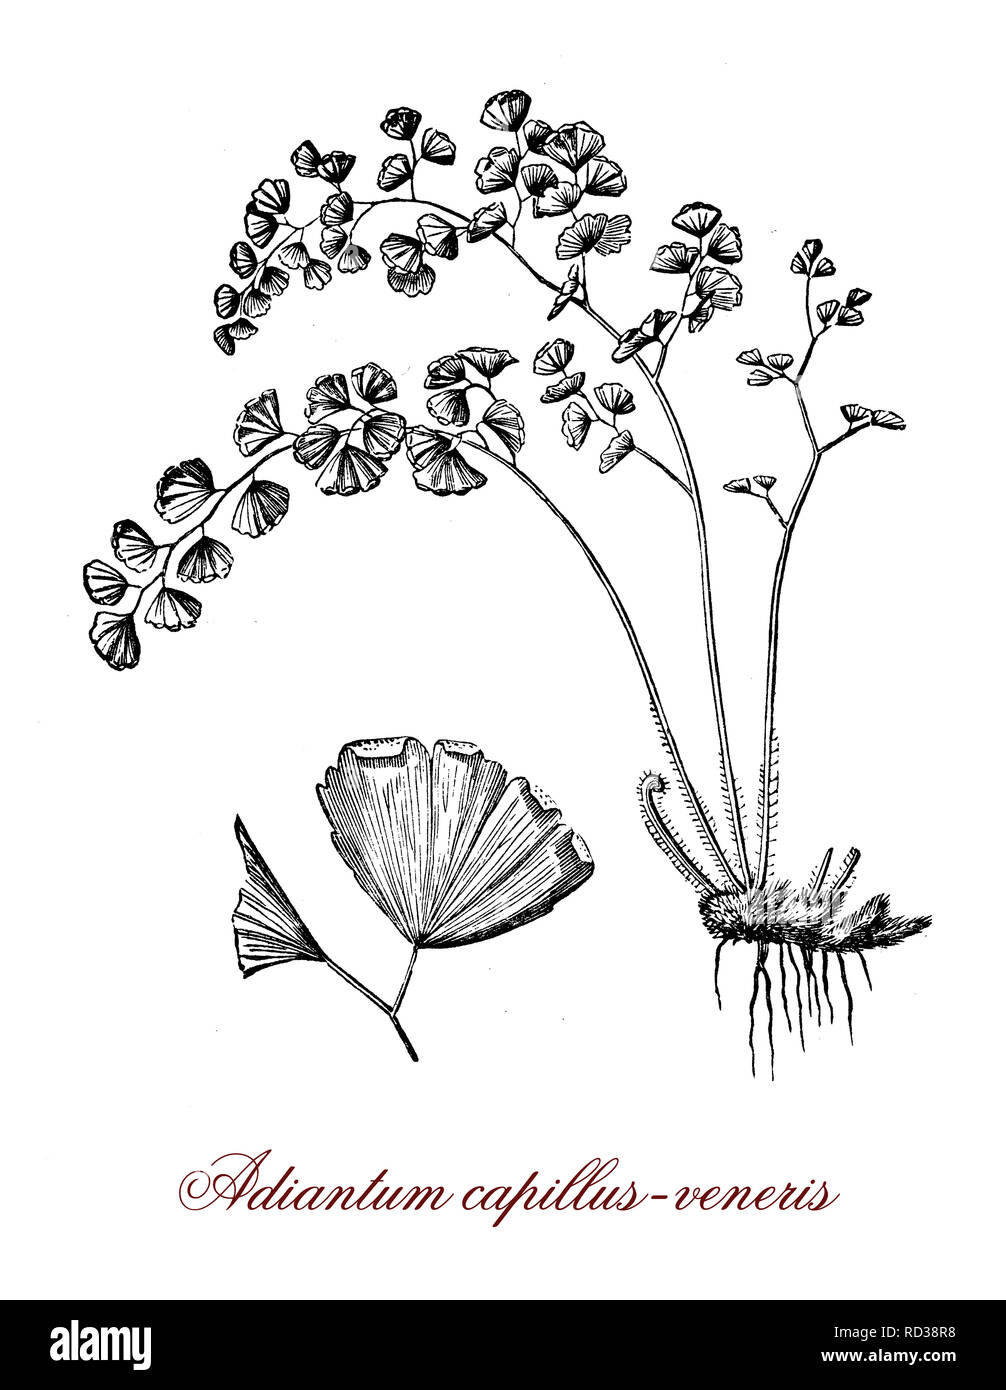 Gravure botanique vintage de Adiantum capillus-veneris,une espèce de fougère, cultivée comme ornementale dans les jardins d'ombre et en tant que plante. Banque D'Images